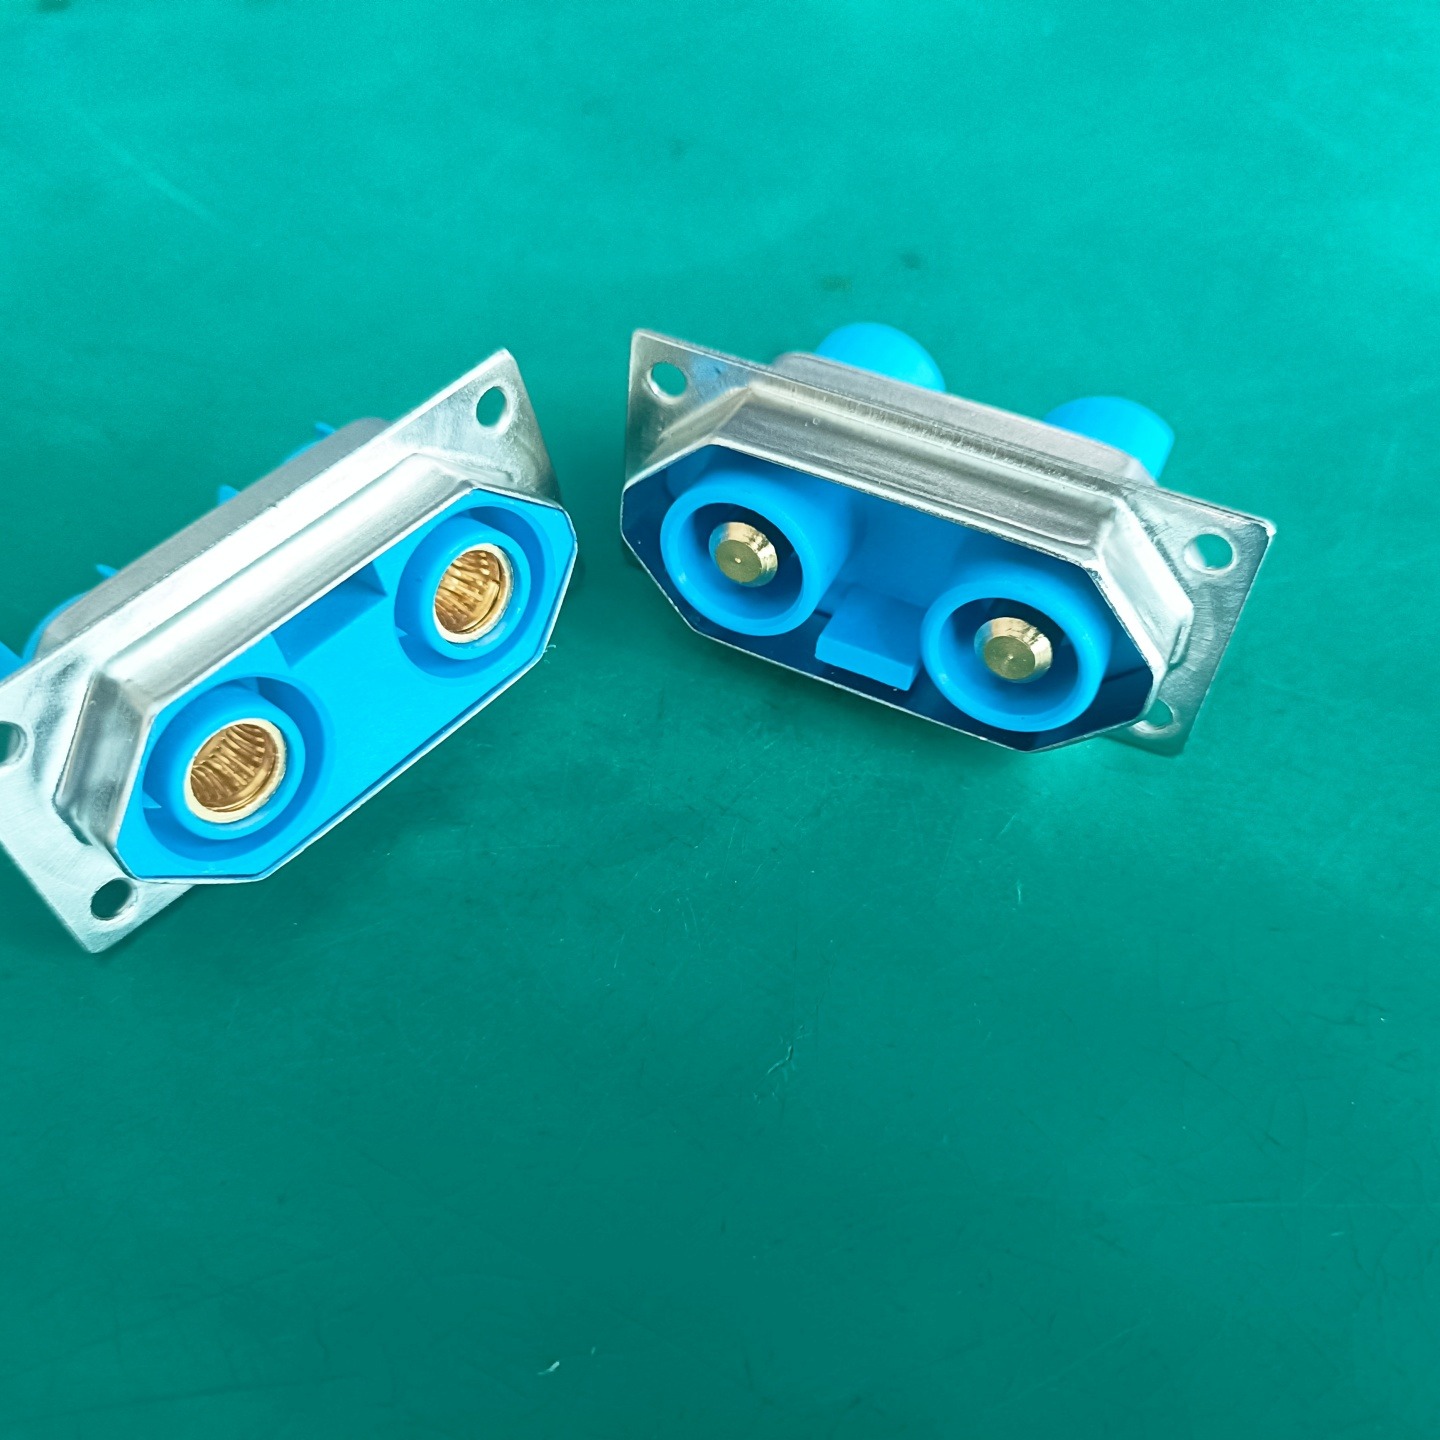 2芯大电流连接器  可用于机箱外部接口  冠簧插孔  带铁壳屏蔽 防止电磁干扰  储能连接器  电池连接器图片